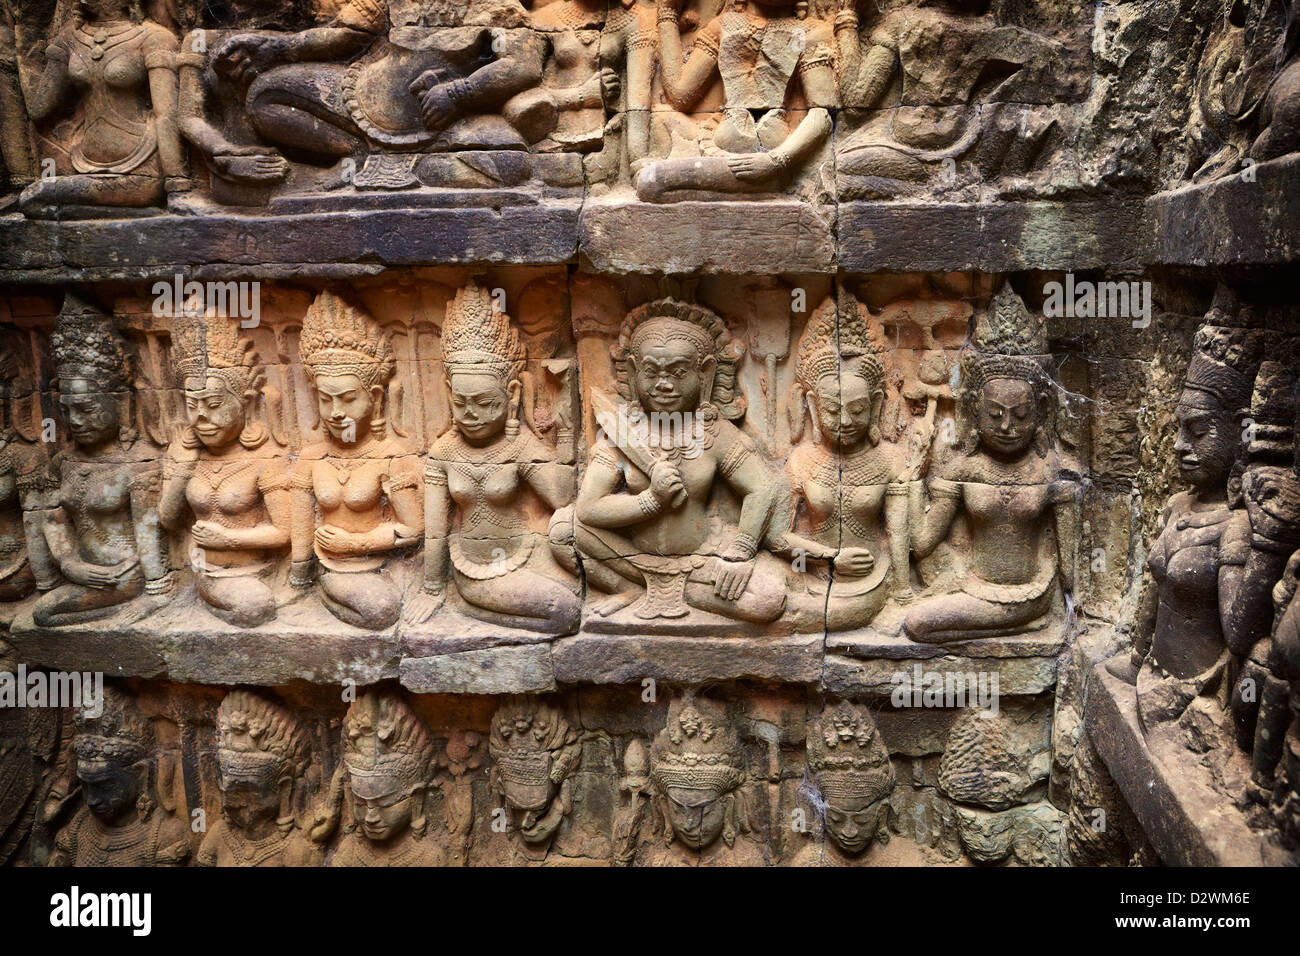 Die Terrasse des Aussätzigen Königs, Skulpturen von der Wand des Tempels, Angkor, Kambodscha, Asien Stockfoto